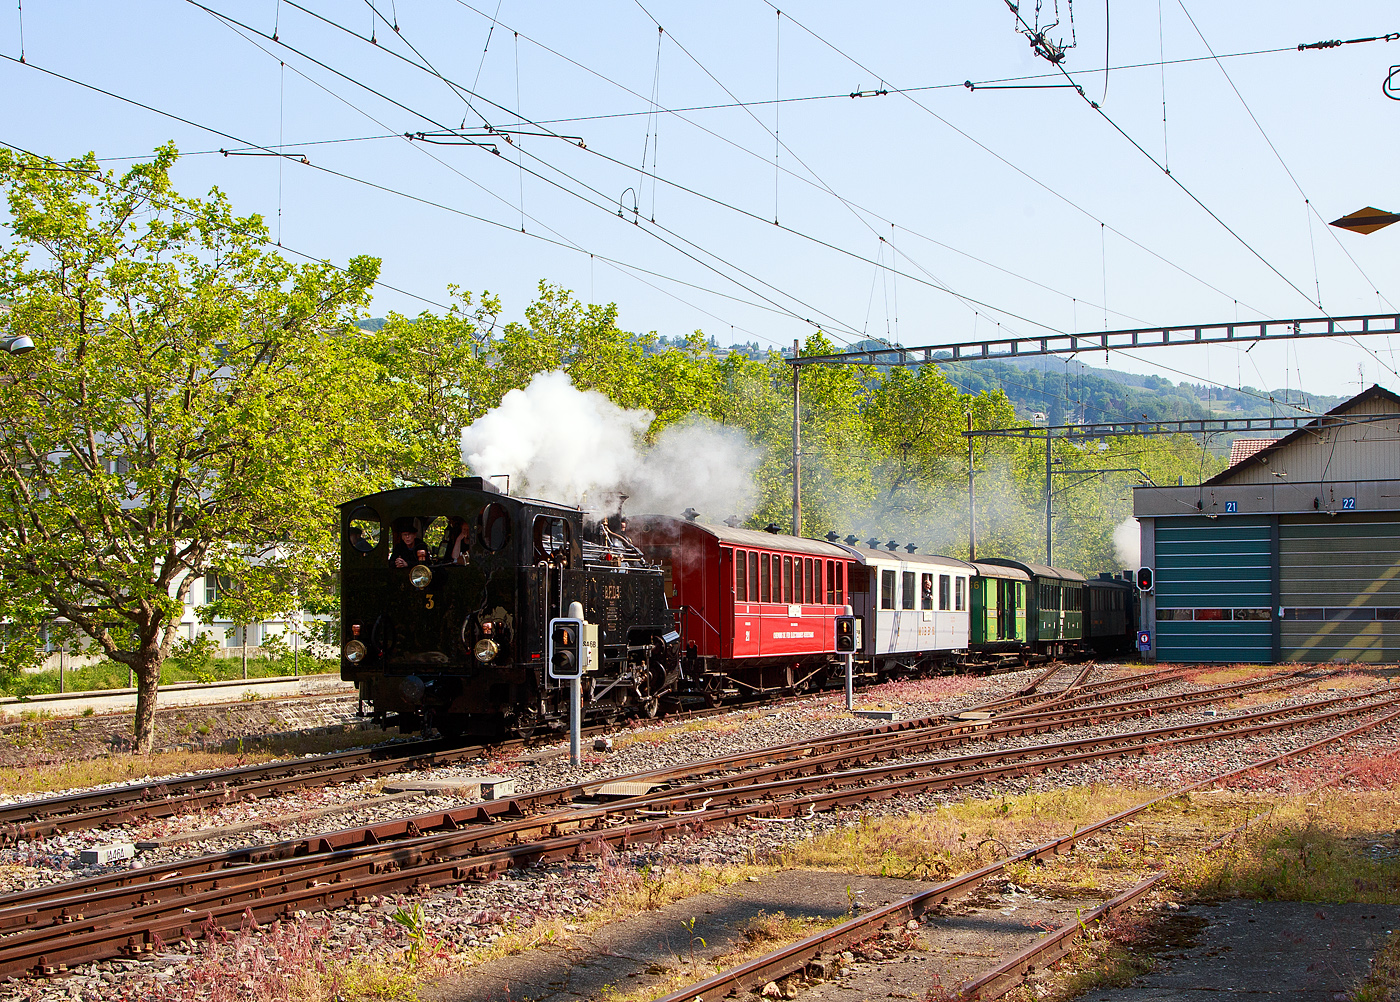 Der Dampfzug Museumsbahn Blonay-Chamby erreicht am 28. Mai 2023 als Leerzug Vevey. Hier fährt er in Sandwich, geführt von der Dampflokomotive für gemischten Adhäsions- und Zahnradbetrieb HG 3/4 B.F.D. 3 (Brig–Furka–Disentis-Bahn), ex F.O. 3, und am Zugschluss die Mallet-Dampflok G 2x2/2 105  Todtnau , ex SEG 105  Todtnau .

Die Loks setzen gleichdrauf aufwändig um, der Zug wird dann geführt G 2x2/2 105  Todtnau  und dahinter der HG 3/4 B.F.D. 3 in Doppeltraktion als Riviera Belle Epoque von Vevey über Blonay zum B-C Museum Chaulin fahren. Hätte man den Zug oben andersherum zusammengestellt, wäre das Manöver doch einfacher gewesen. Der Dampfzug hinauf war dann sehr gut gefüllt. 
